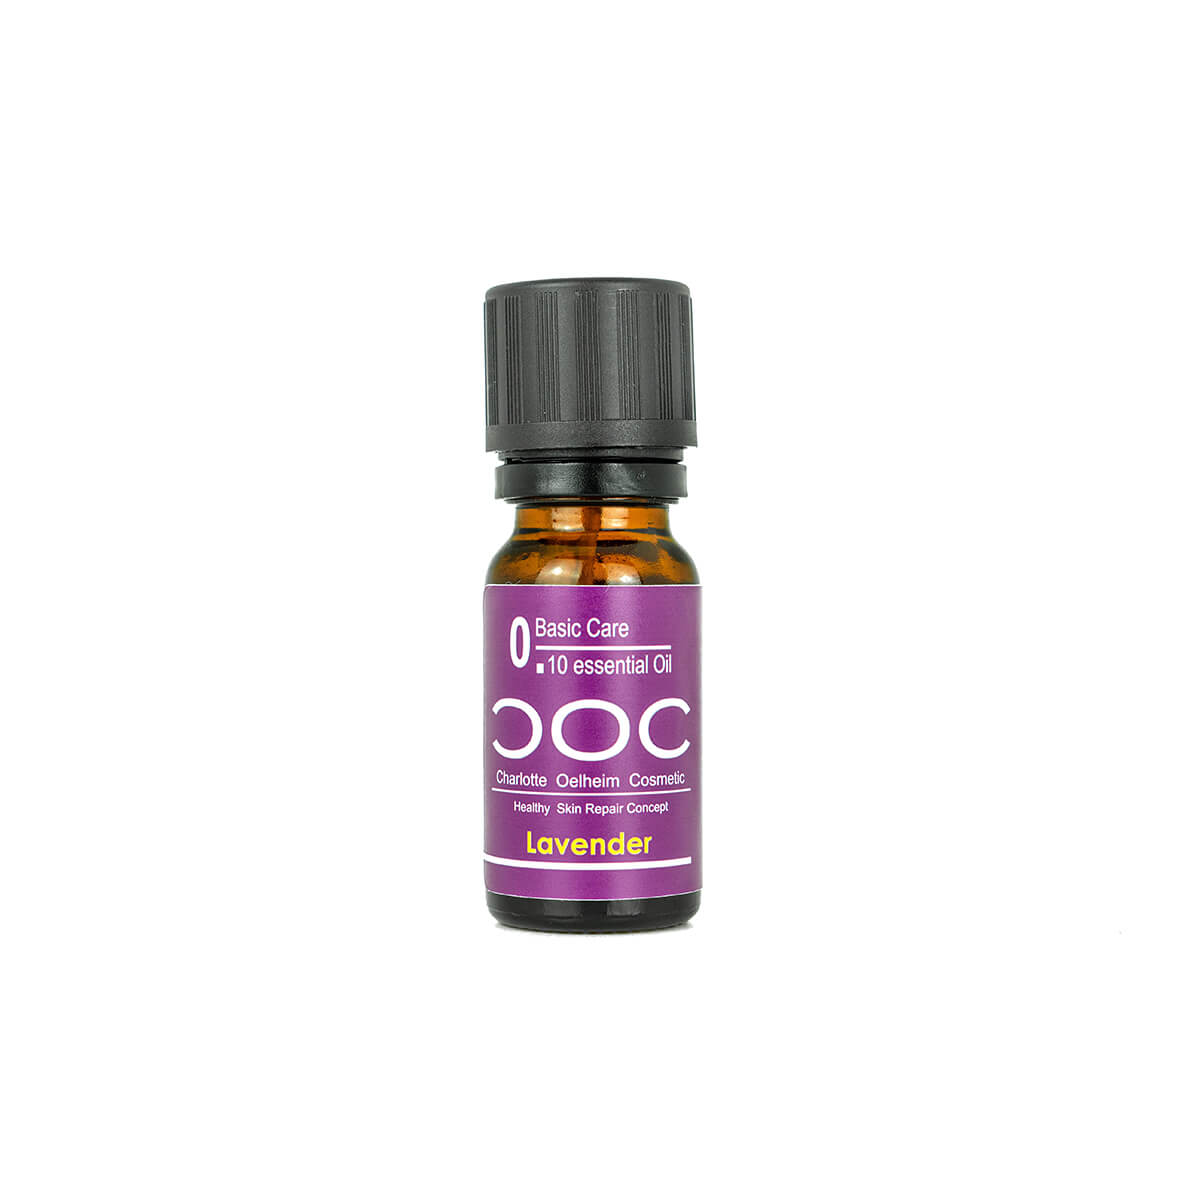 COC 0.10 Essential Oil Lavendel